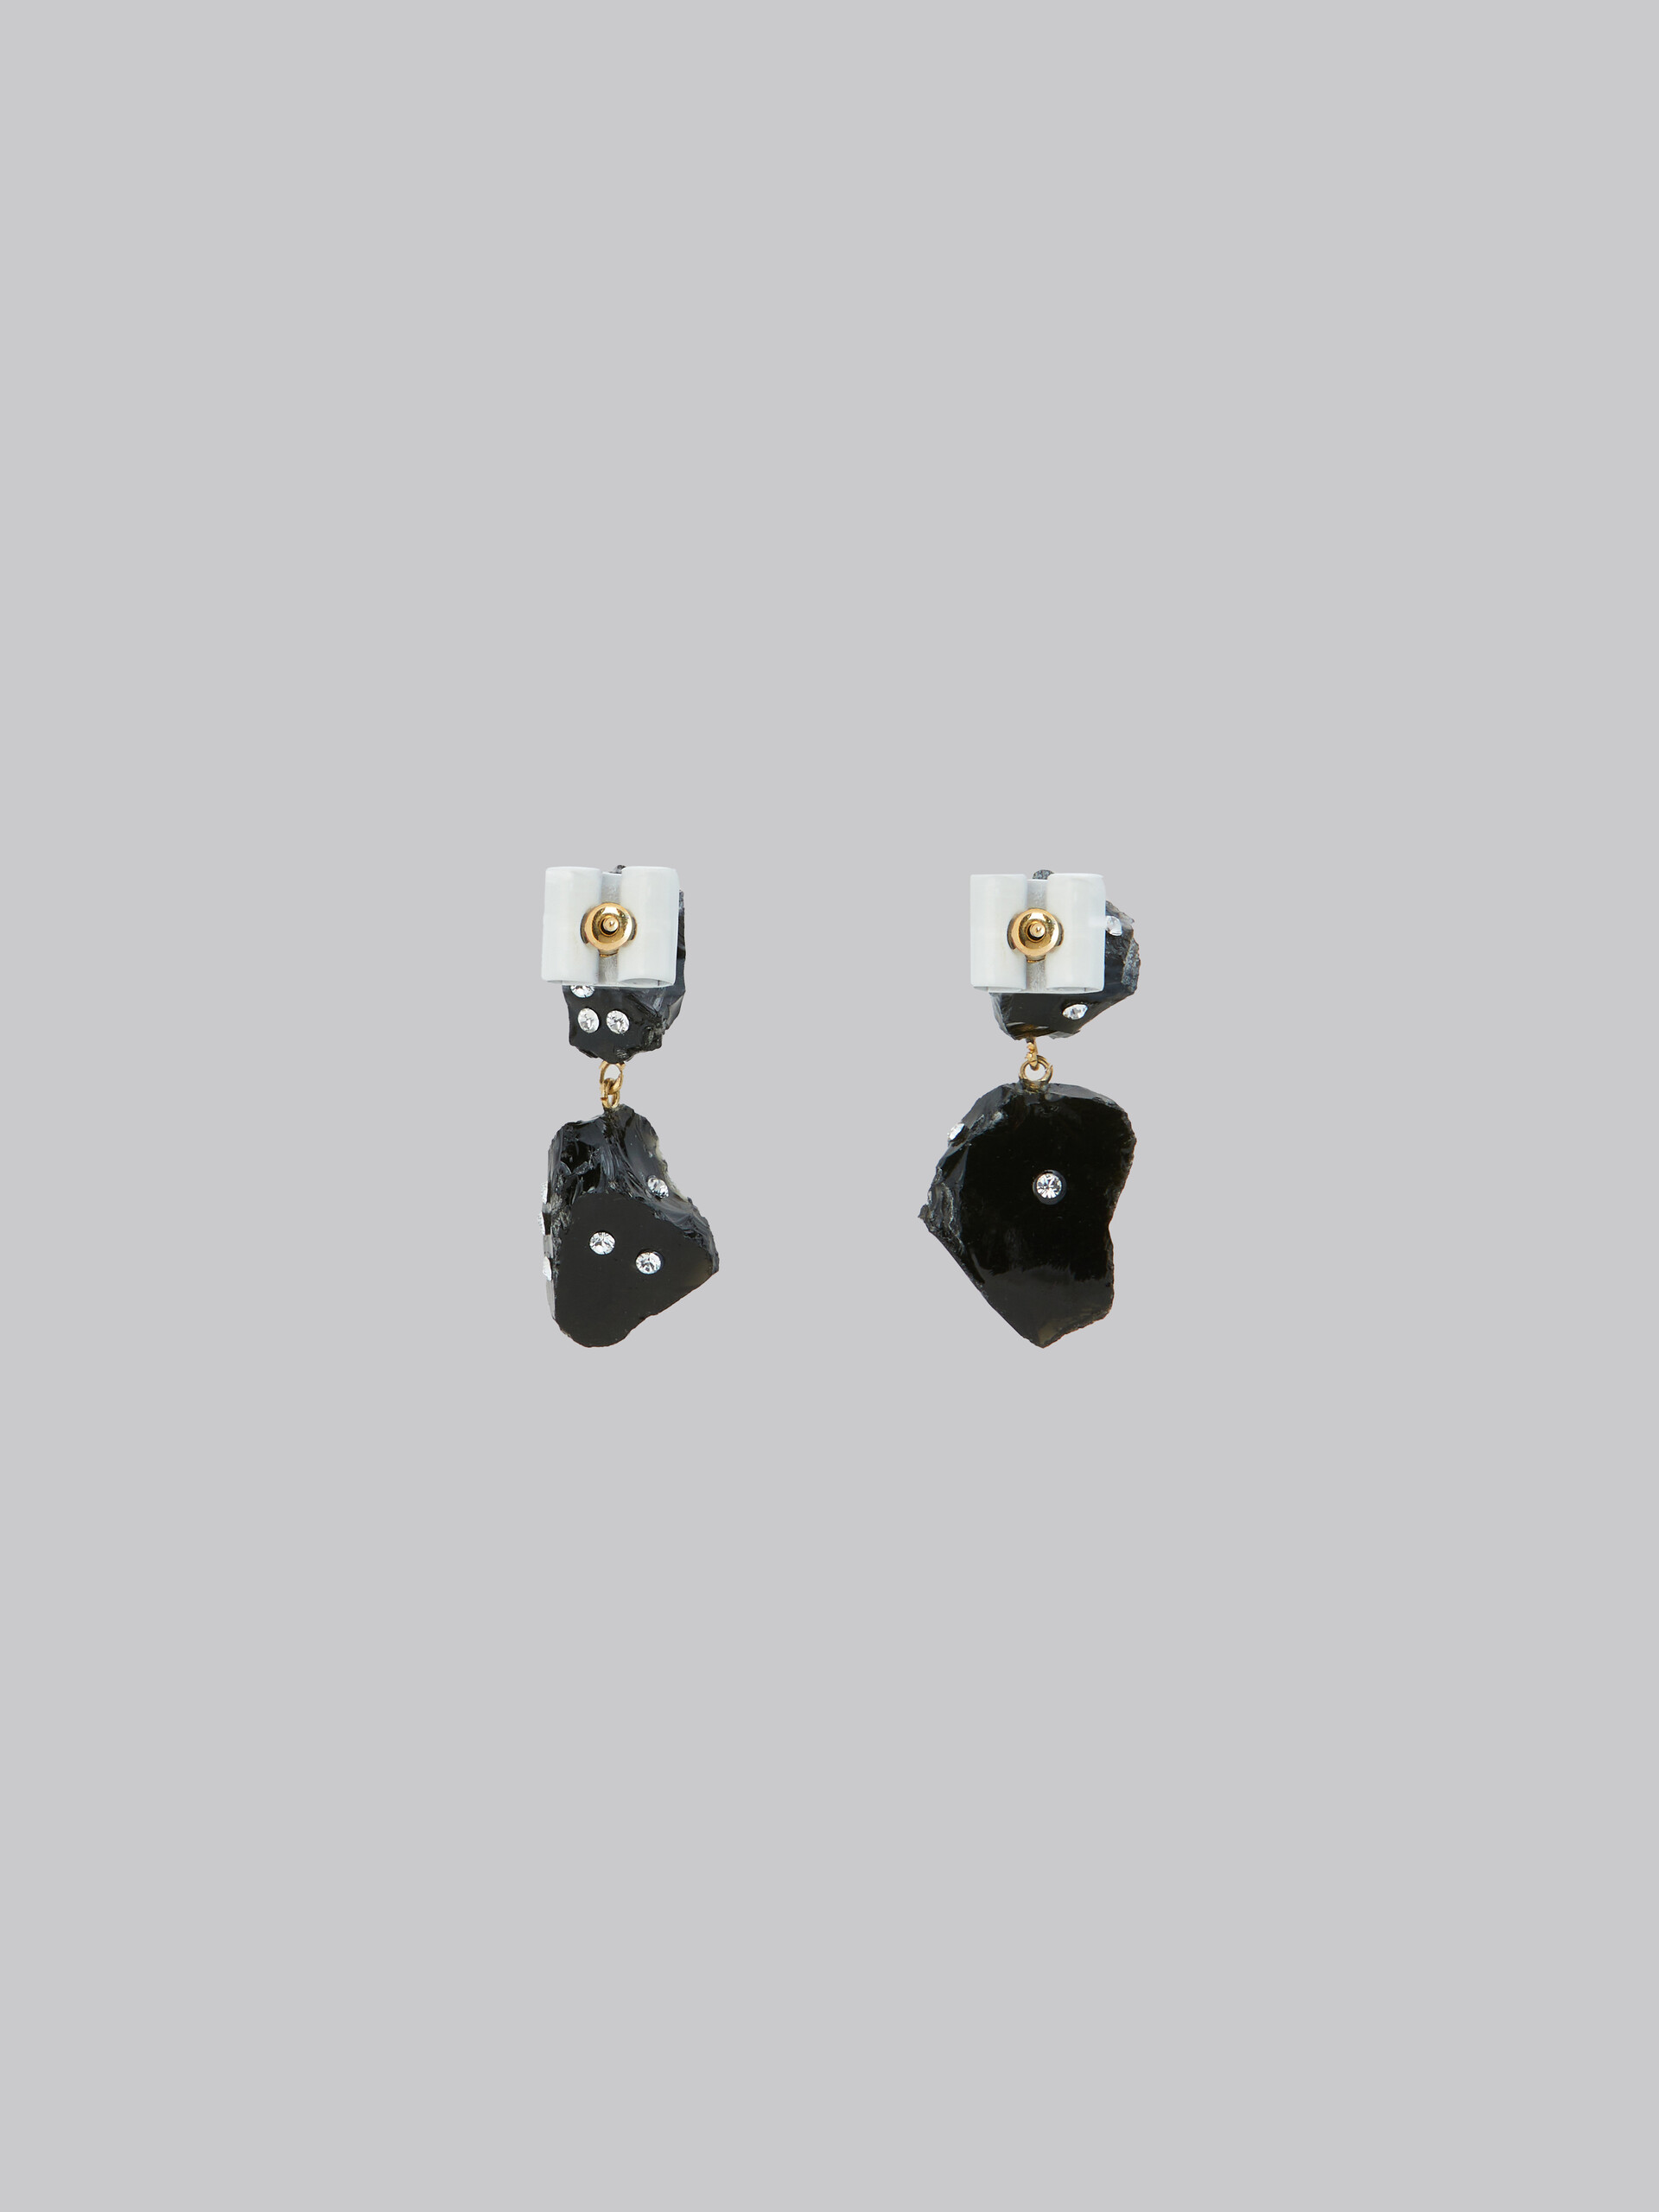 Black obsidian drop earrings with rhinestone polka dots - Earrings - Image 3